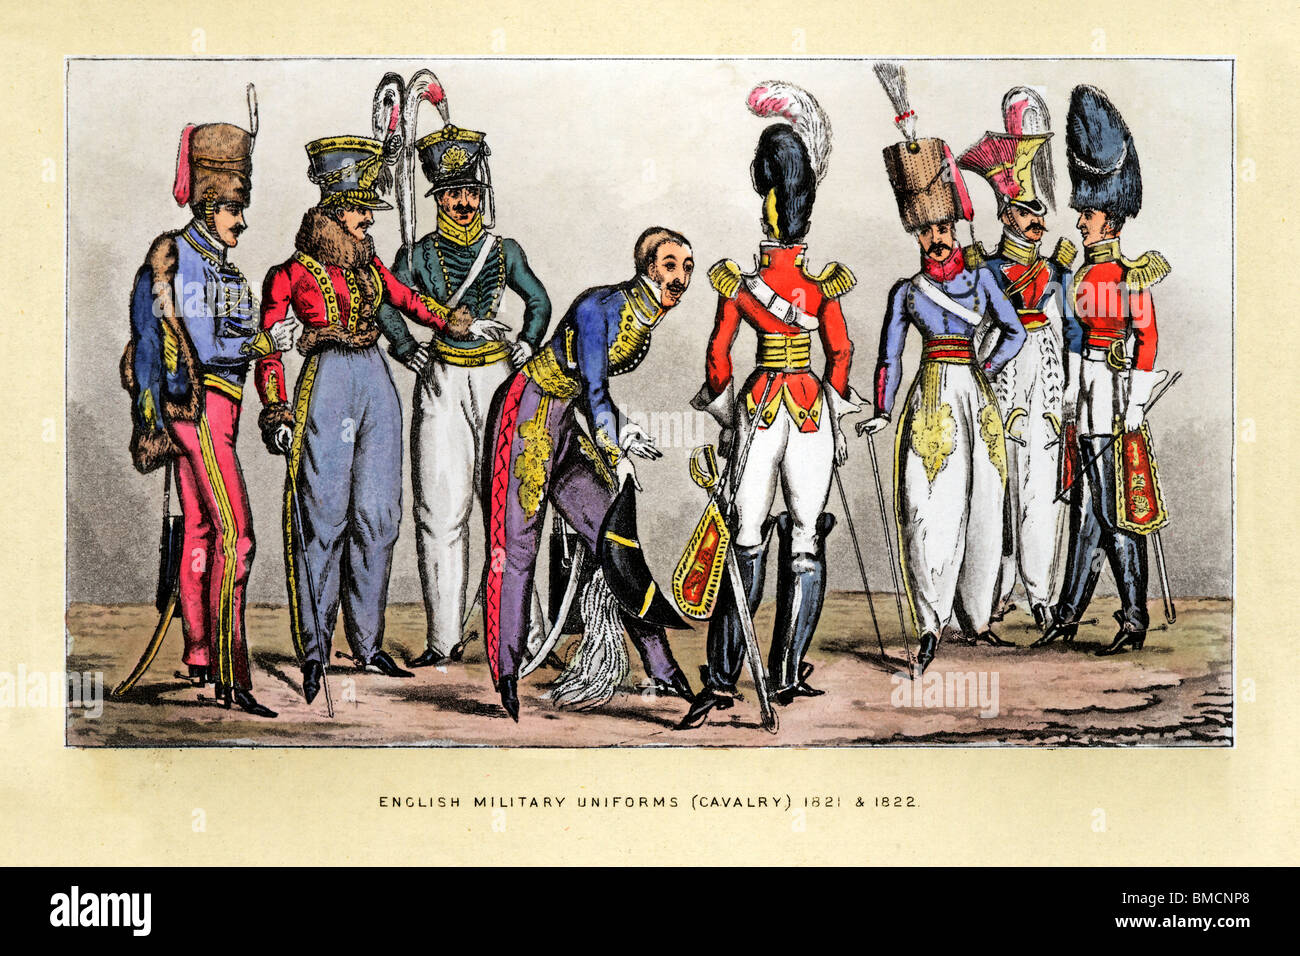 Les uniformes de la cavalerie anglaise, 1822 imprimer des uniformes de fantaisie d'officiers défilant leurs plus beaux atours à l'autre Banque D'Images